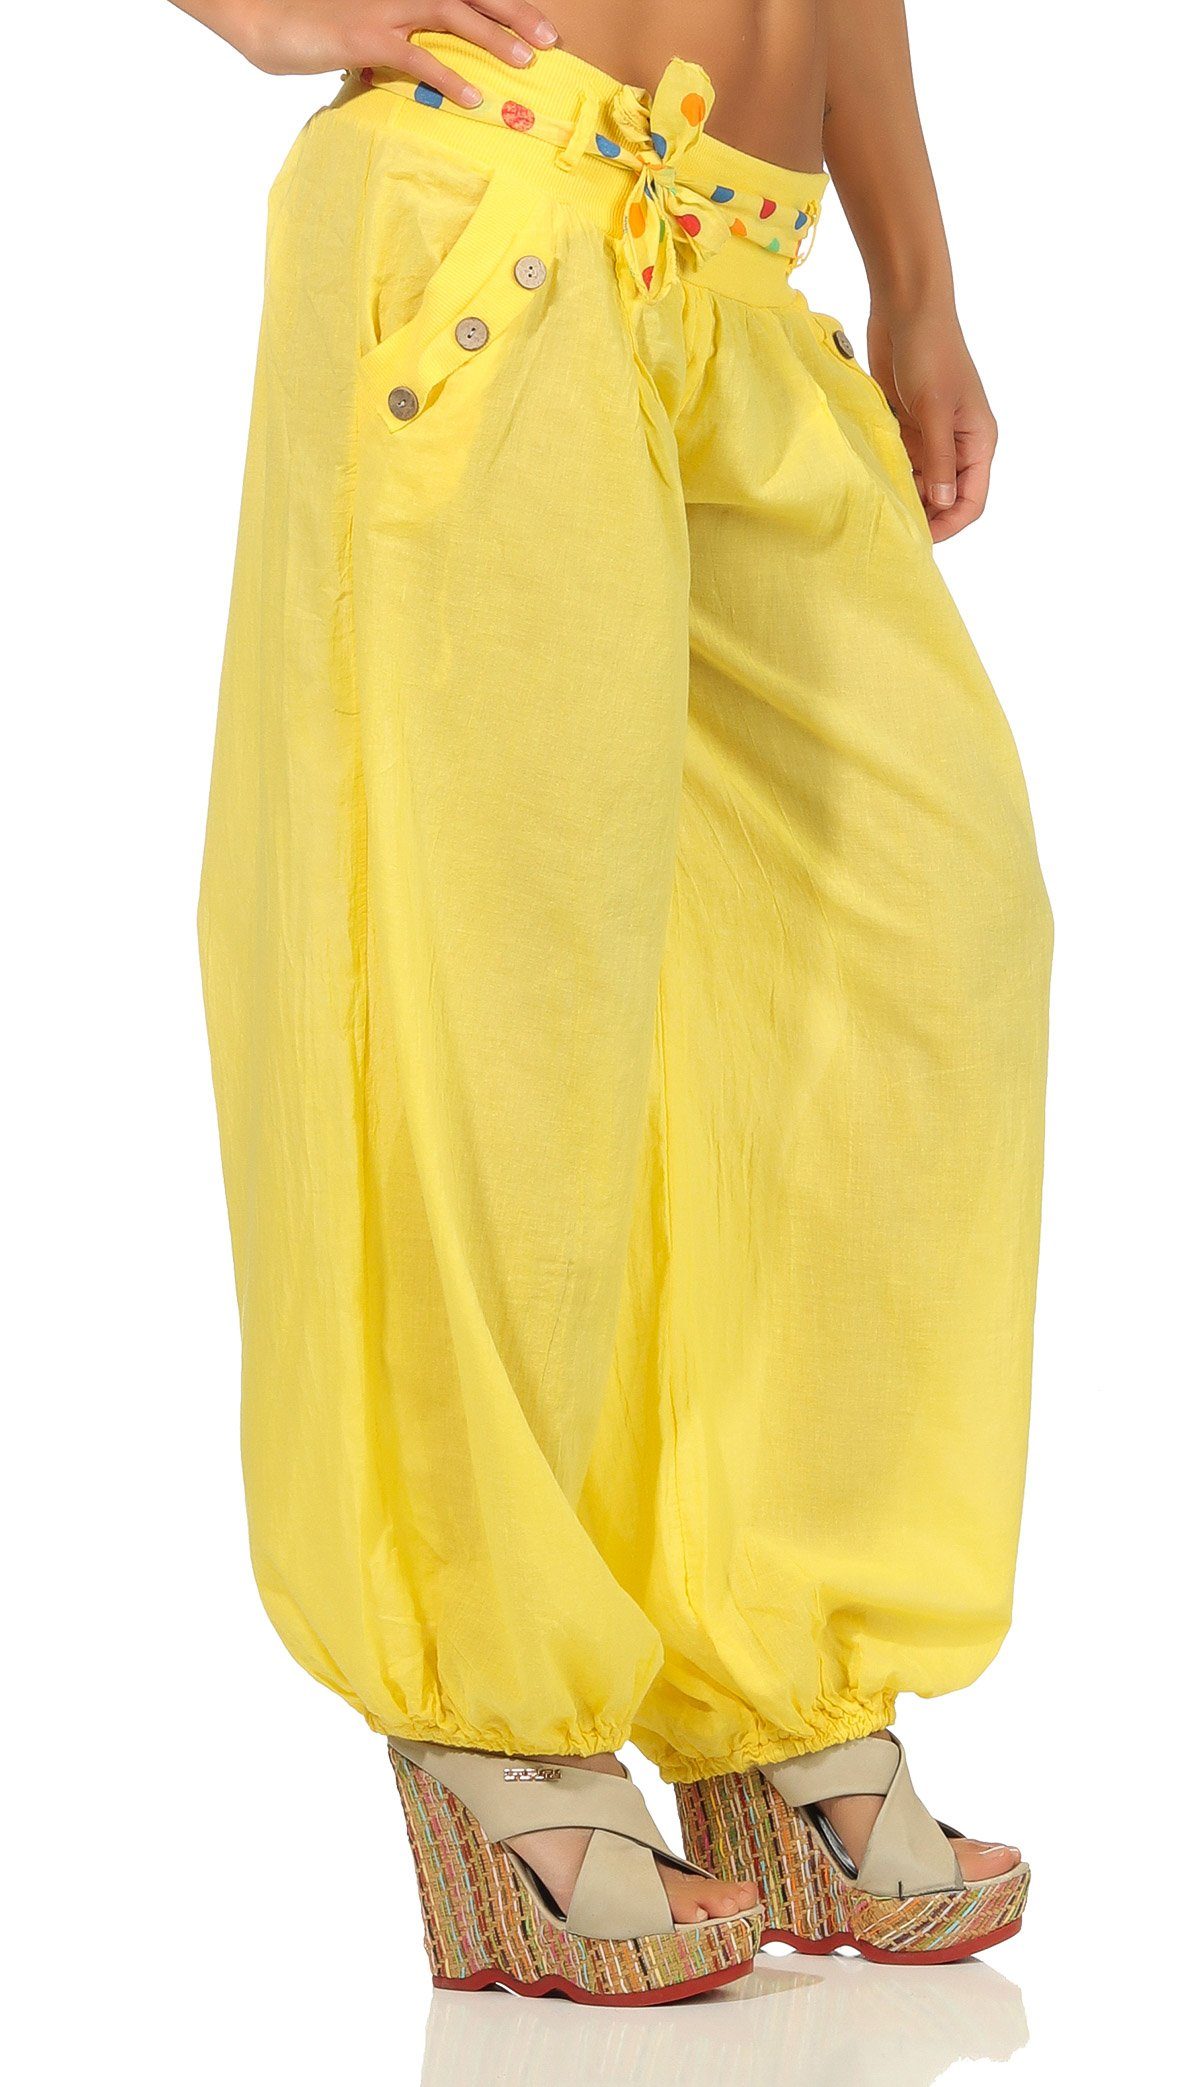 malito than mit Stoffgürtel gelb Haremshose Einheitsgröße 3417 passendem farblich fashion more